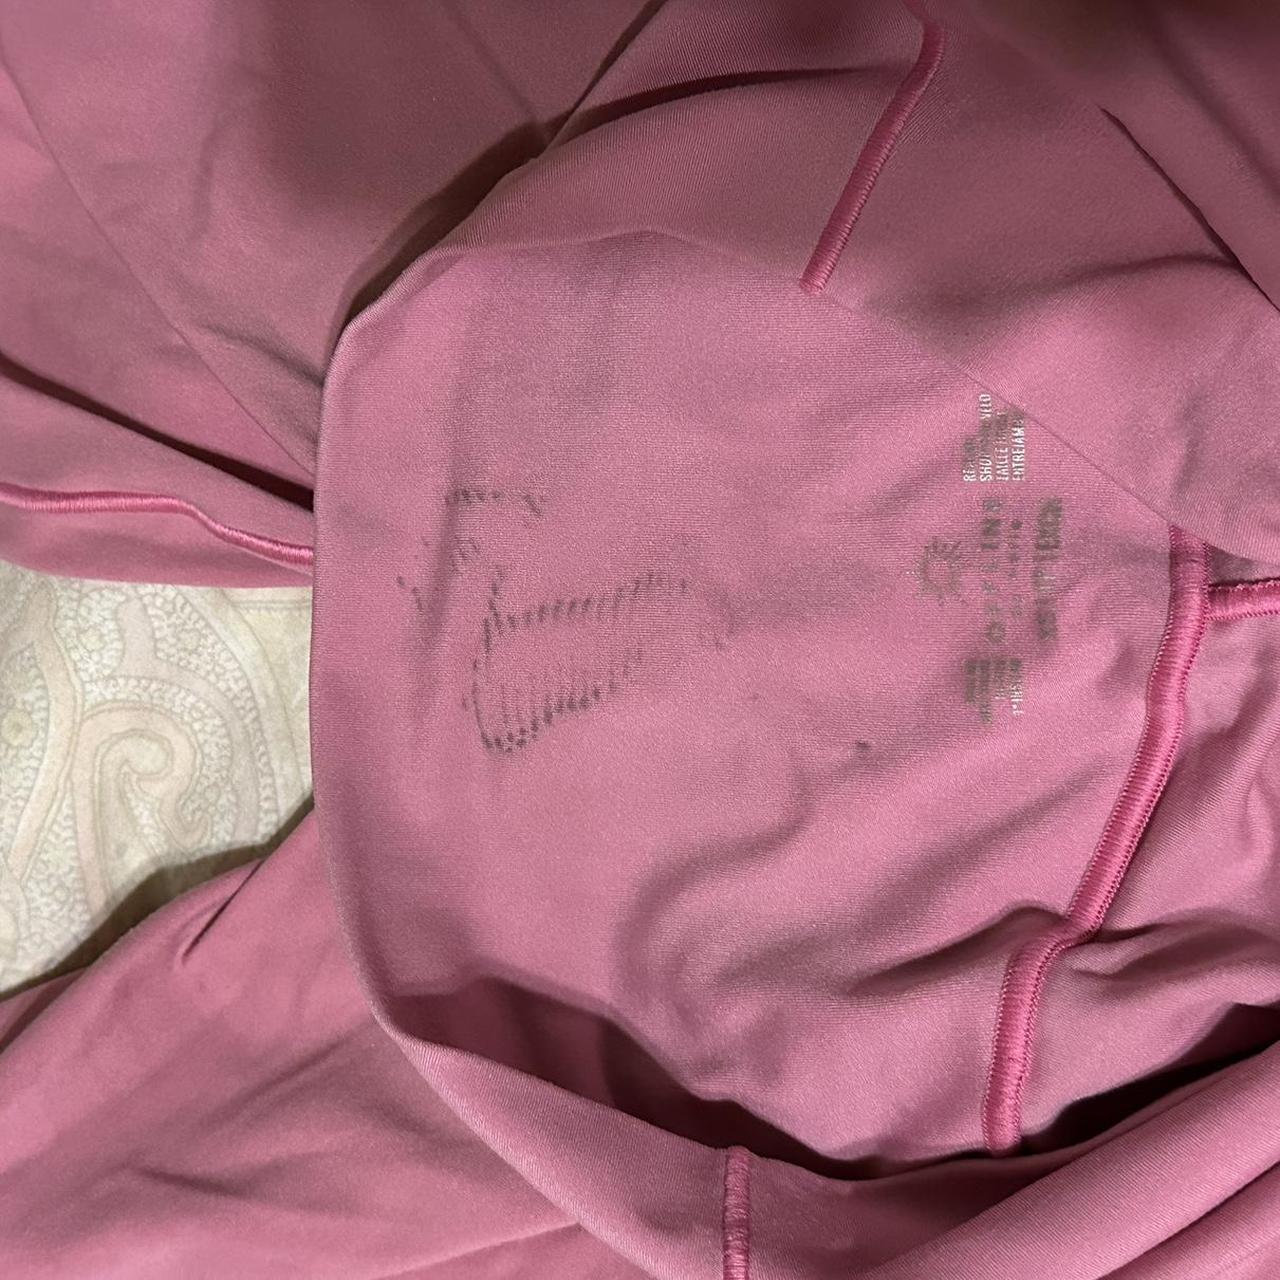 Aerie offline hot pink biker shorts Size XS slight... - Depop